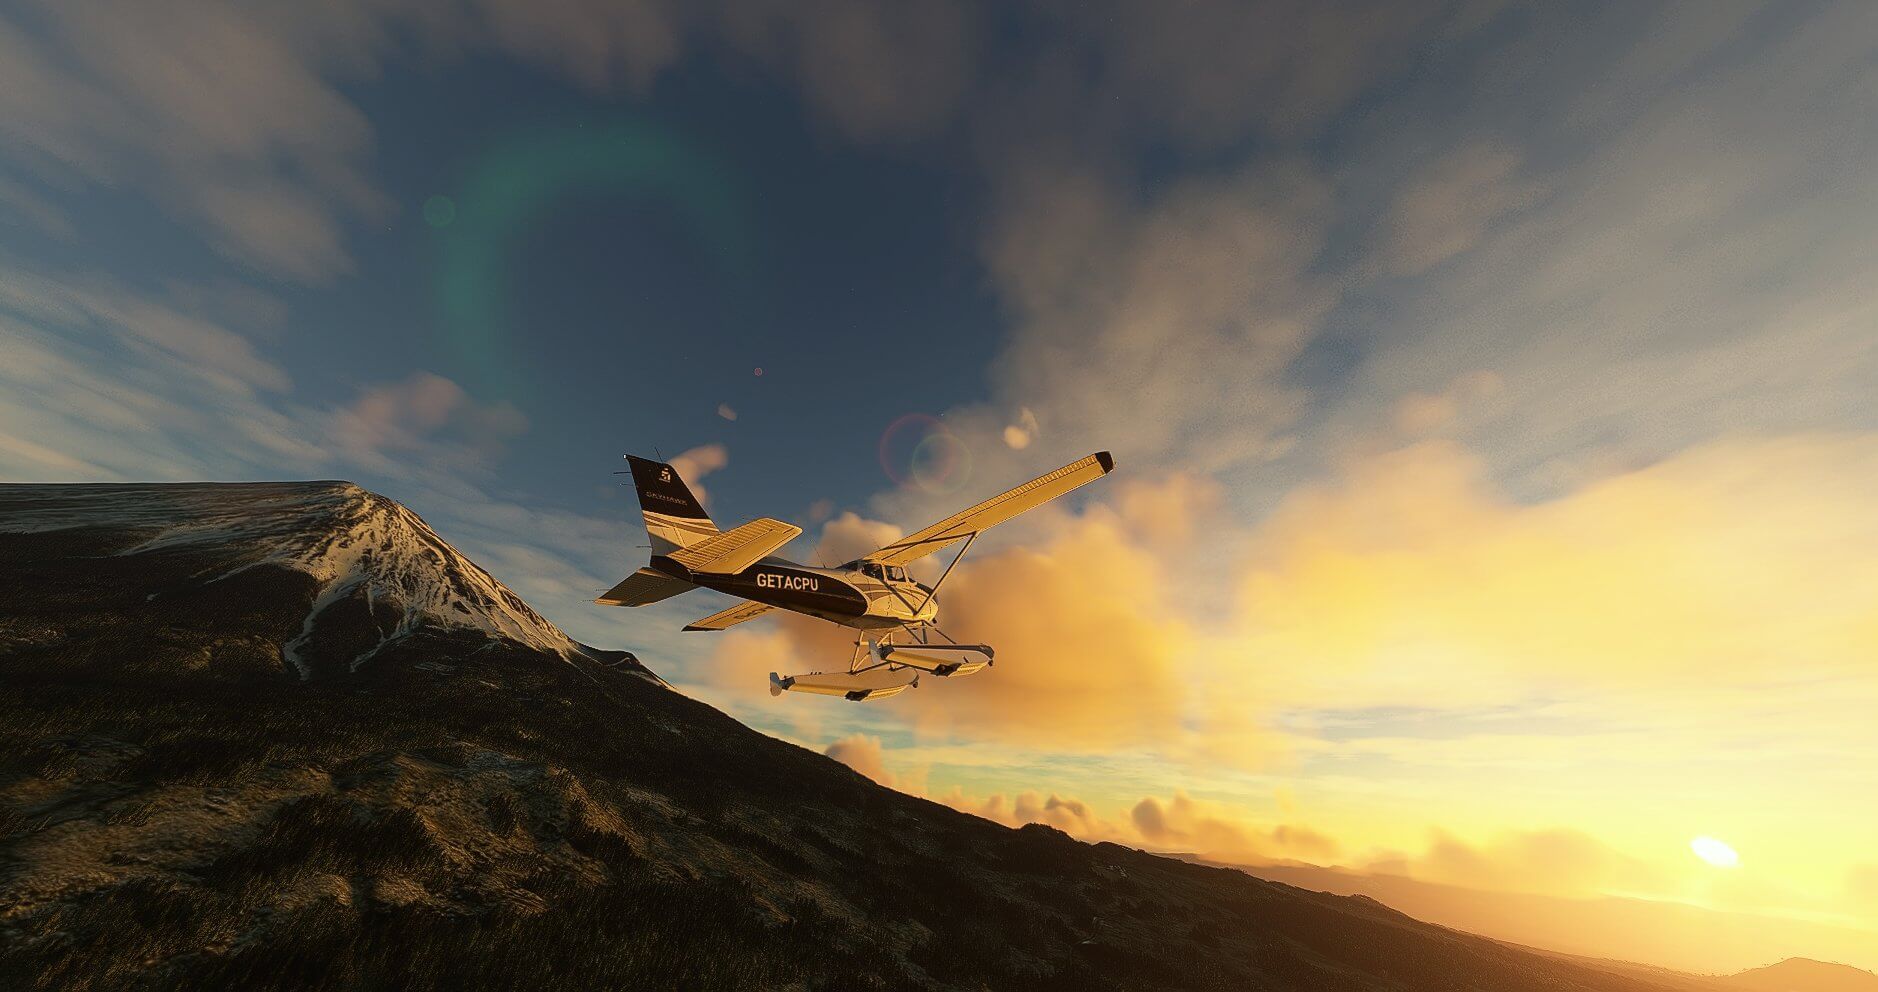 A GA plane flies beside a snowy mountain as the sun rises.